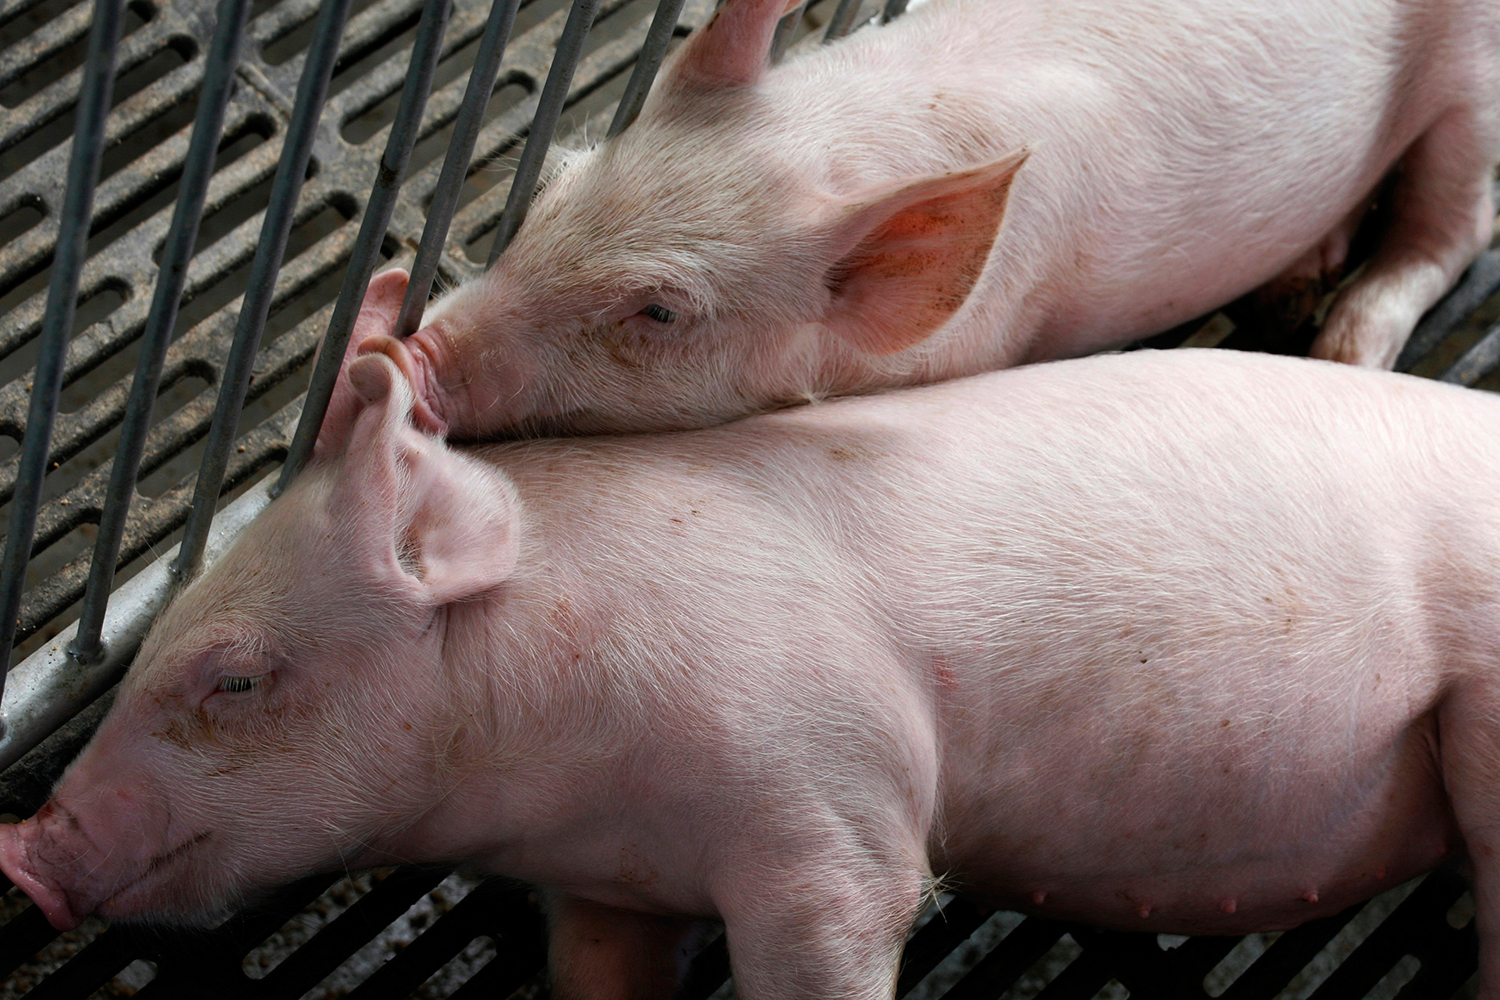 Legisladores de la UE respaldan que se prohíba terminantemente la clonación de animales